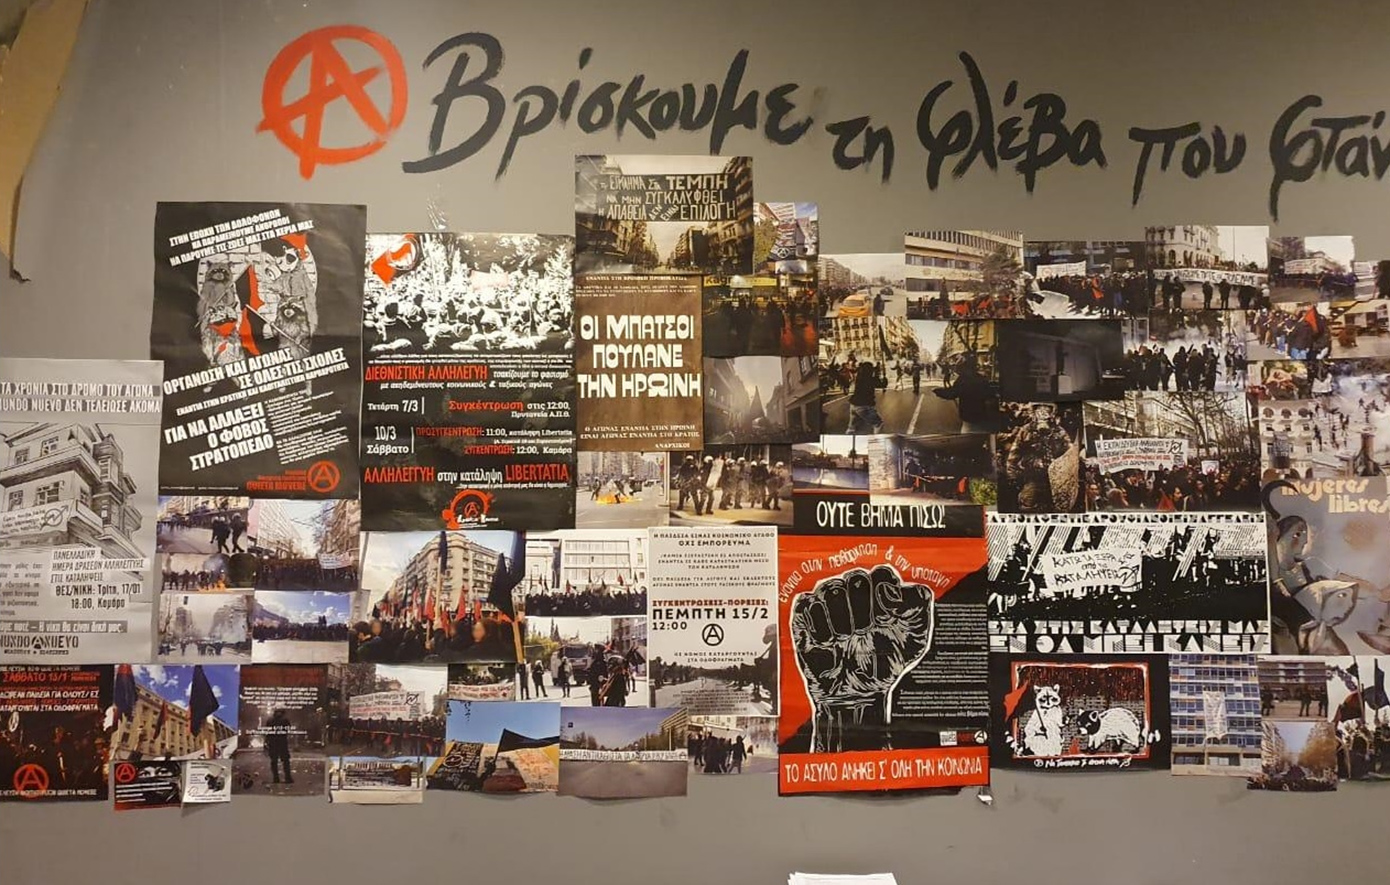 Φωτογραφίες από την κατάληψη στο στέκι «Primavera» εντός του ΑΠΘ που εκκενώθηκε από την ΕΛ.ΑΣ.